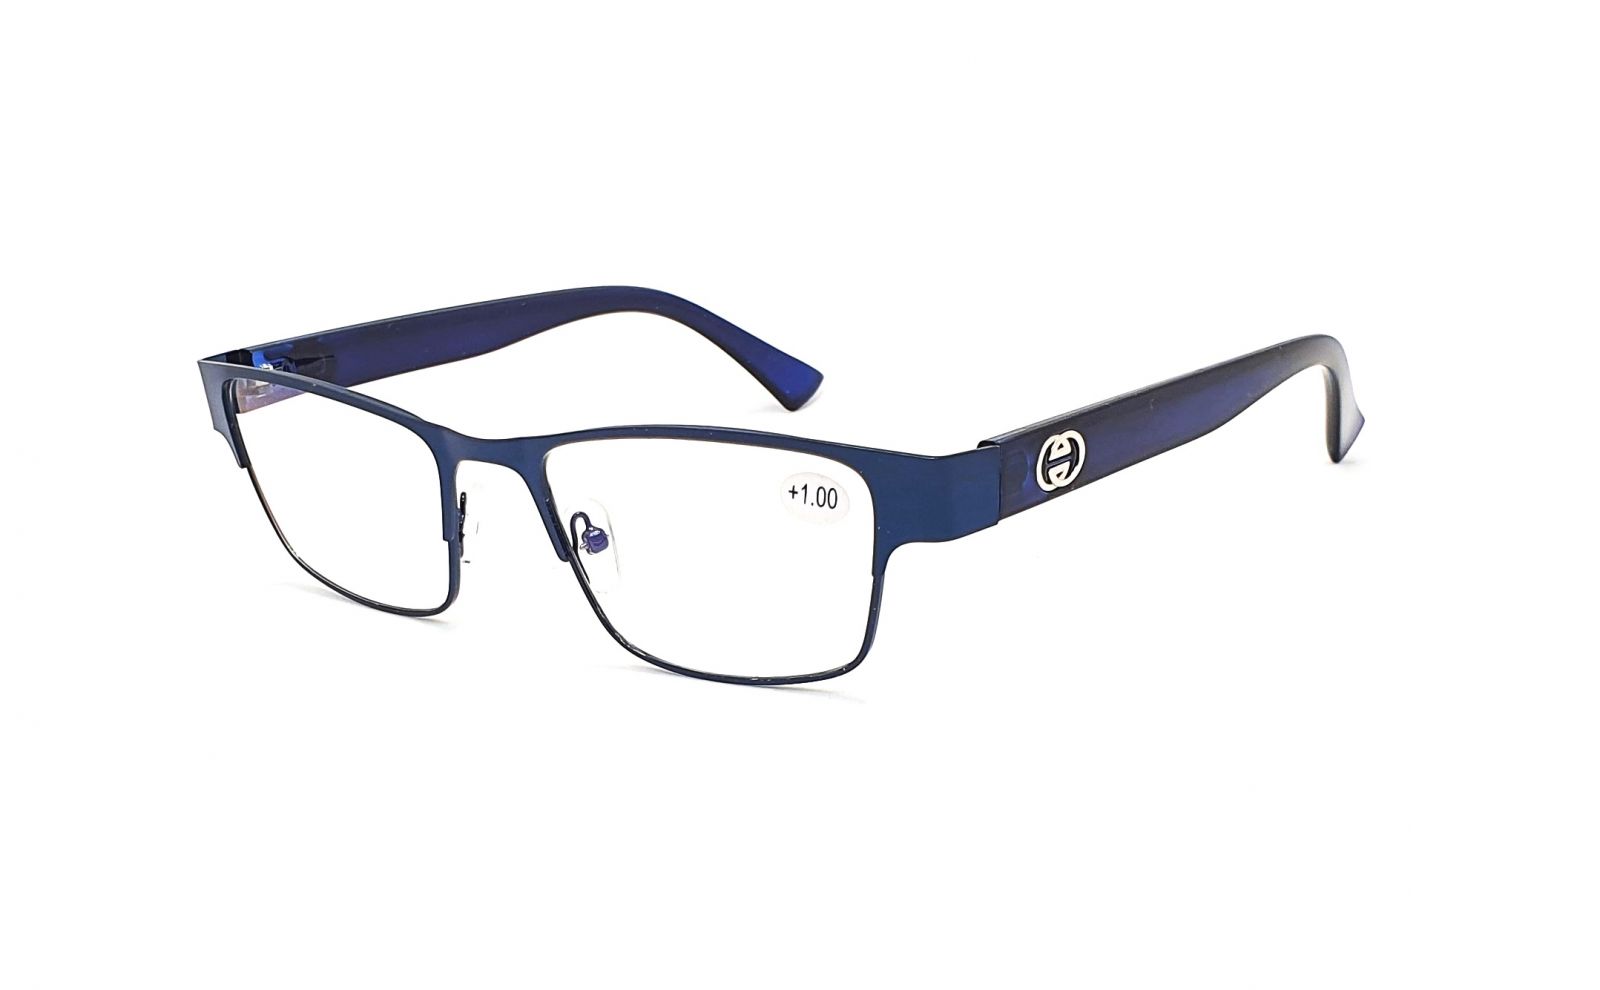 Dioptrické brýle OK231 +4,00 blue s antireflexní vrstvou